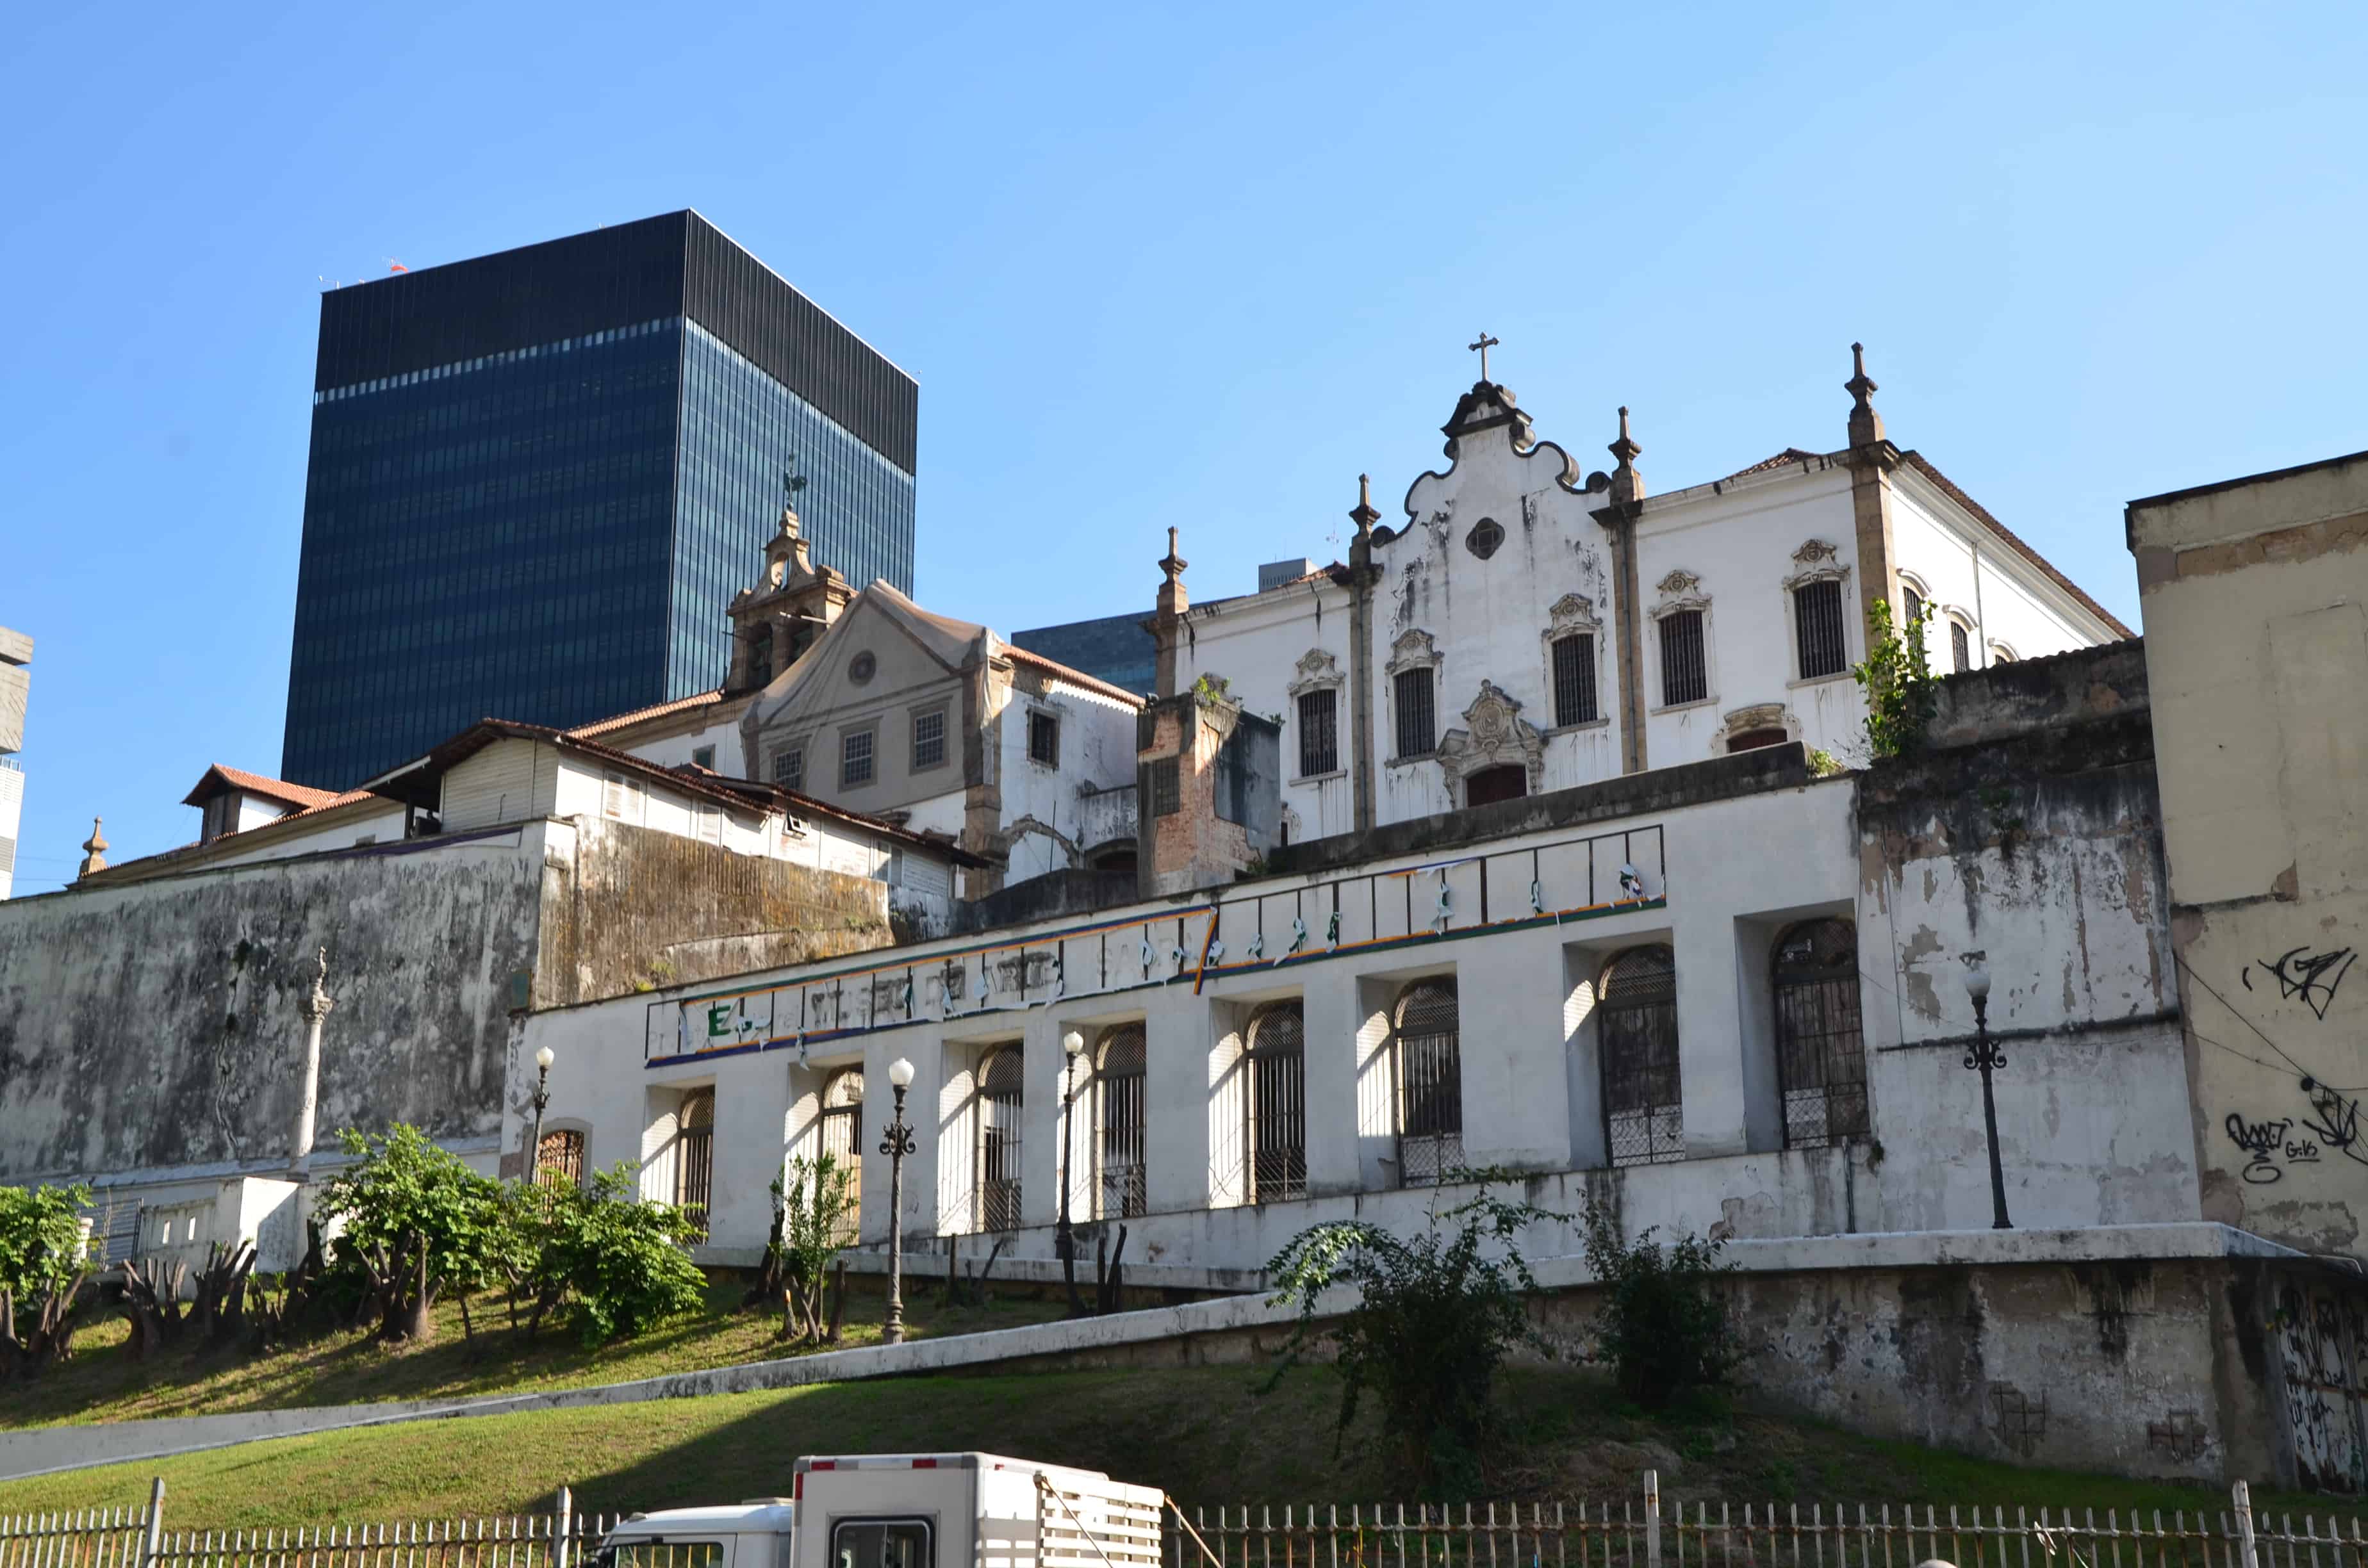 Convento de Santo Antônio in Rio de Janeiro, Brazil